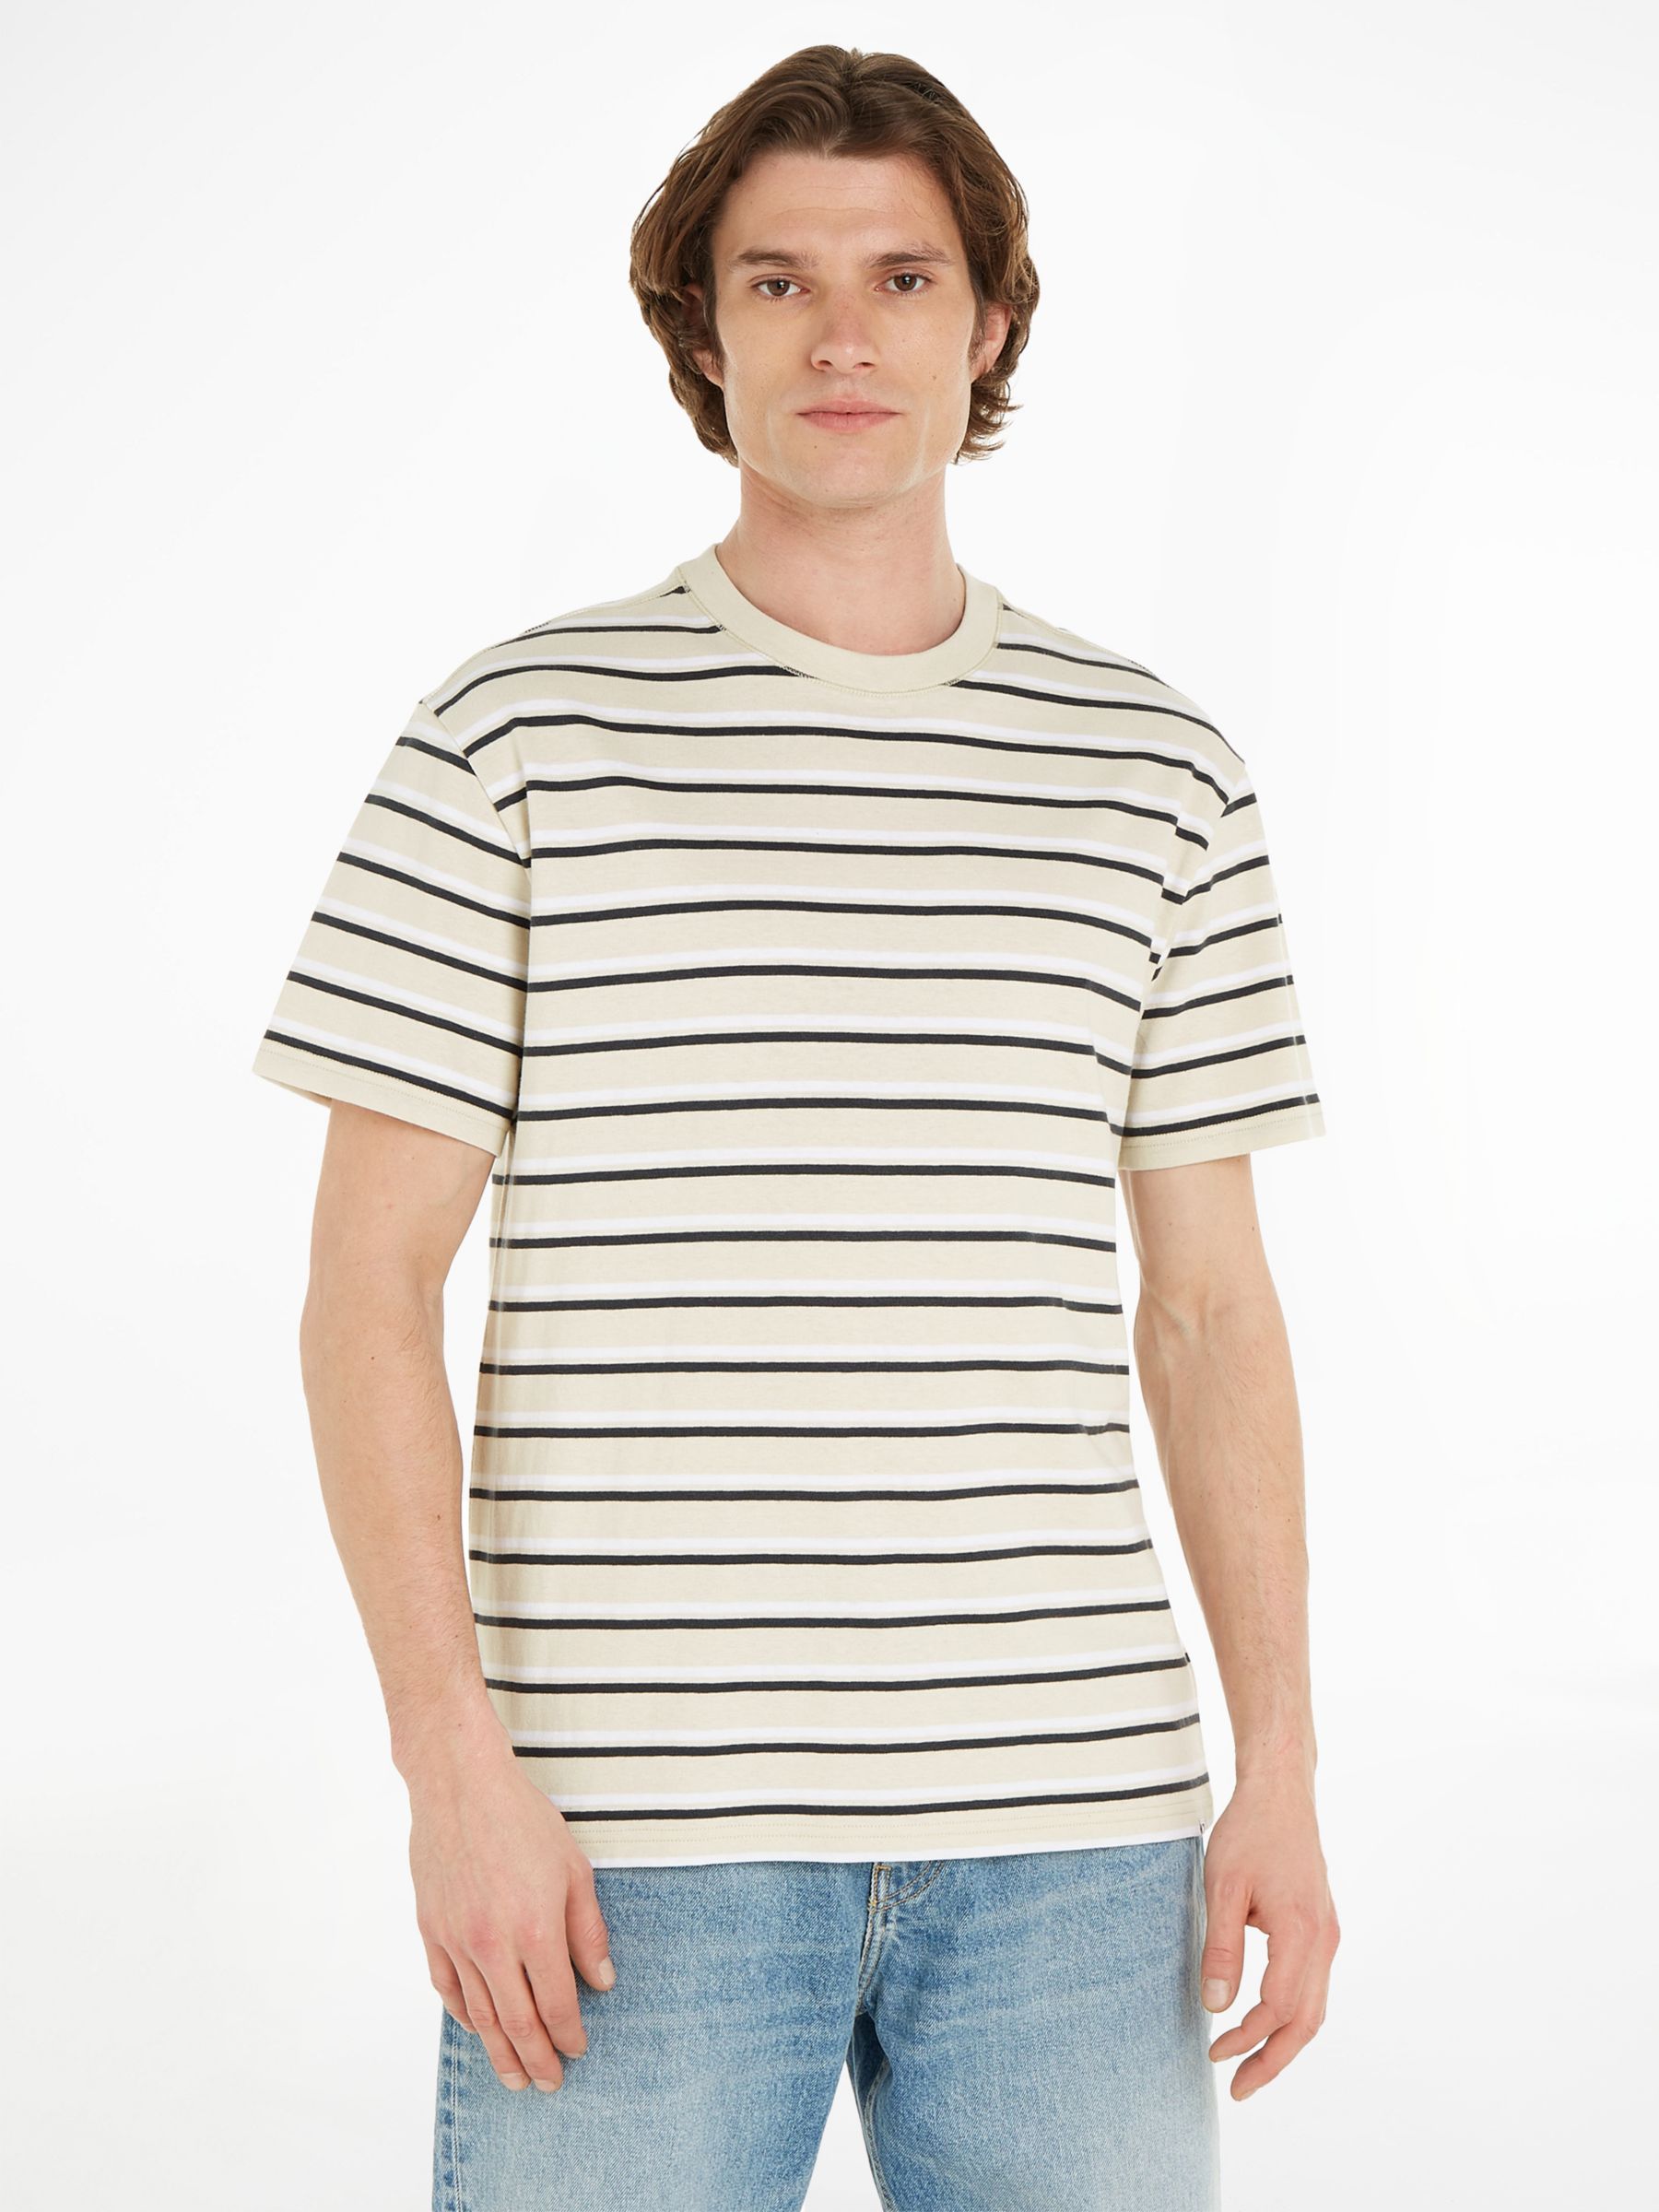 Tommy Jeans Rib Knit Stripe Short Sleeve T-Shirt, Newsprint/Multi, XL